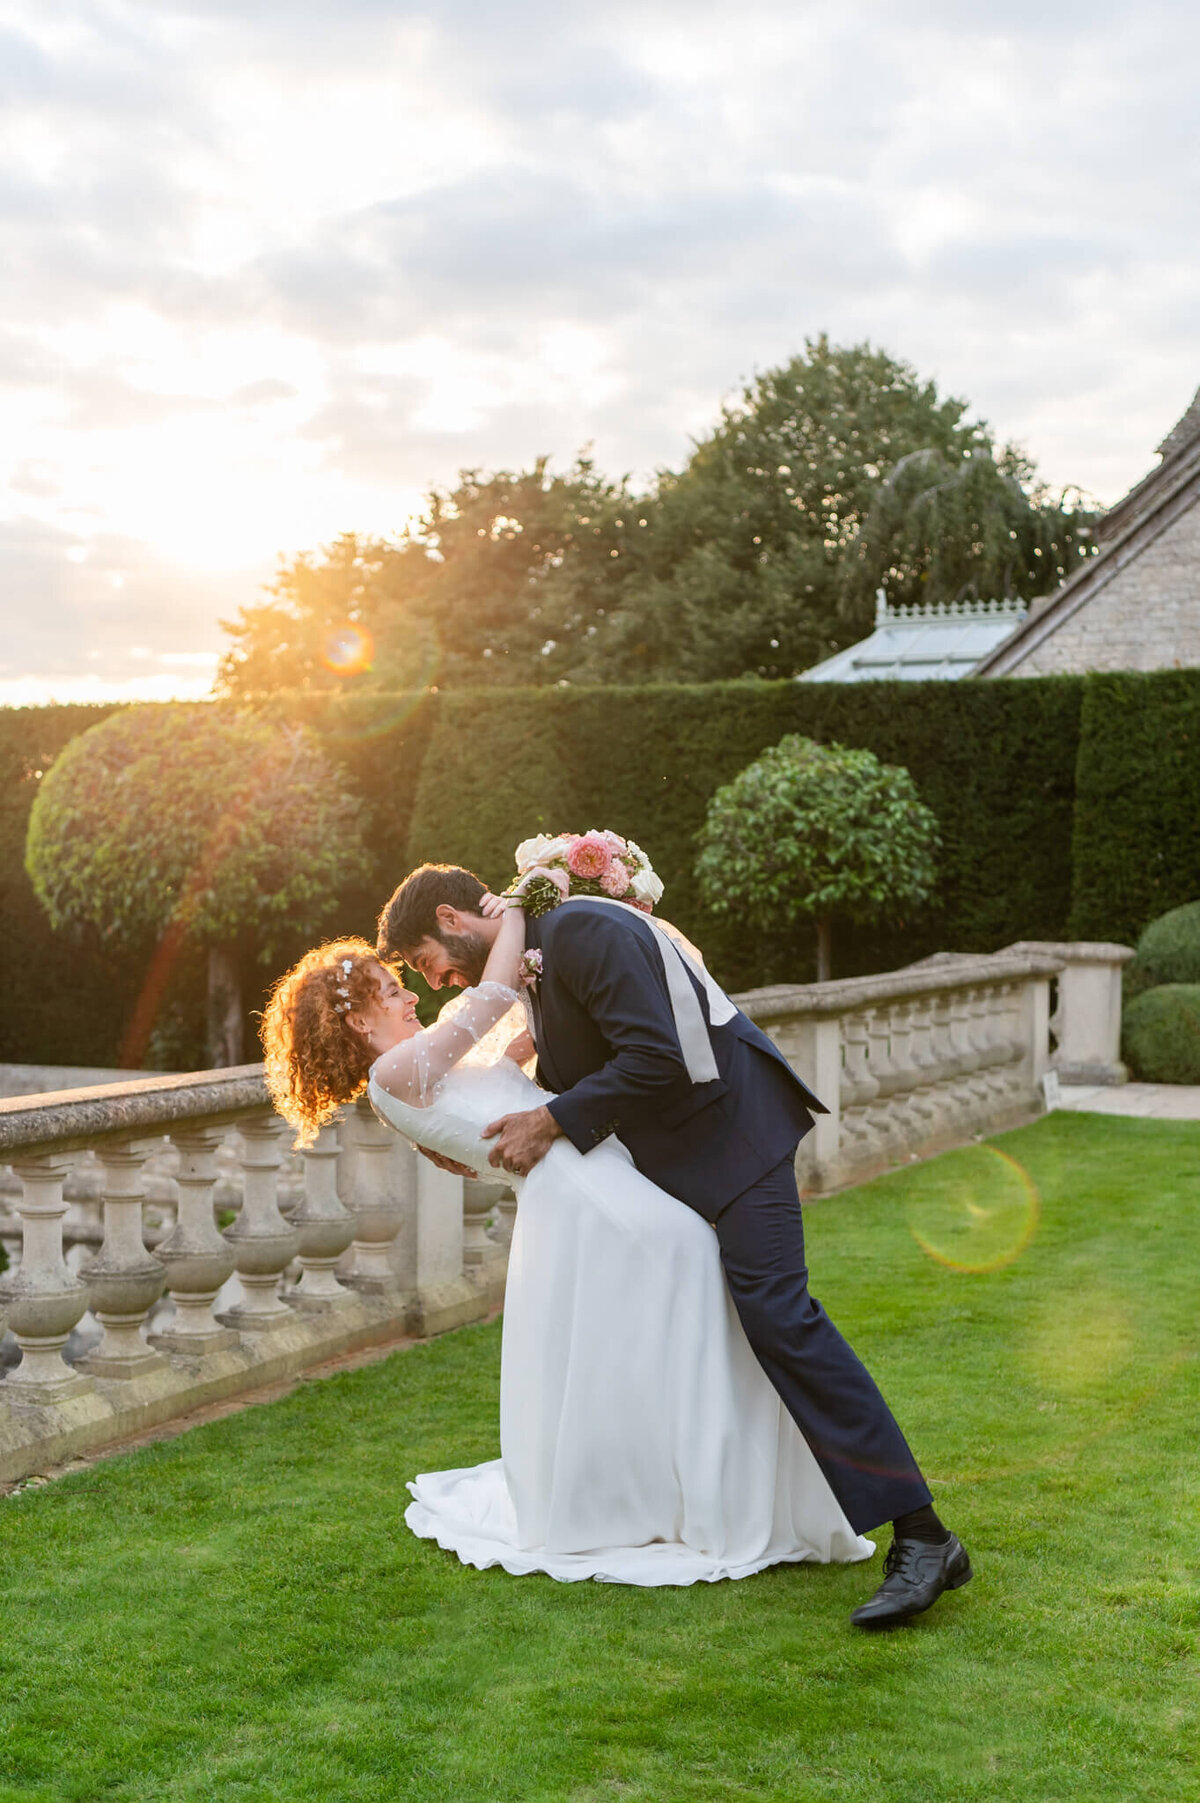 Euridge Manor Wedding Photographer - Luxury UK Wedding Photographer - Chloe Bolam -512